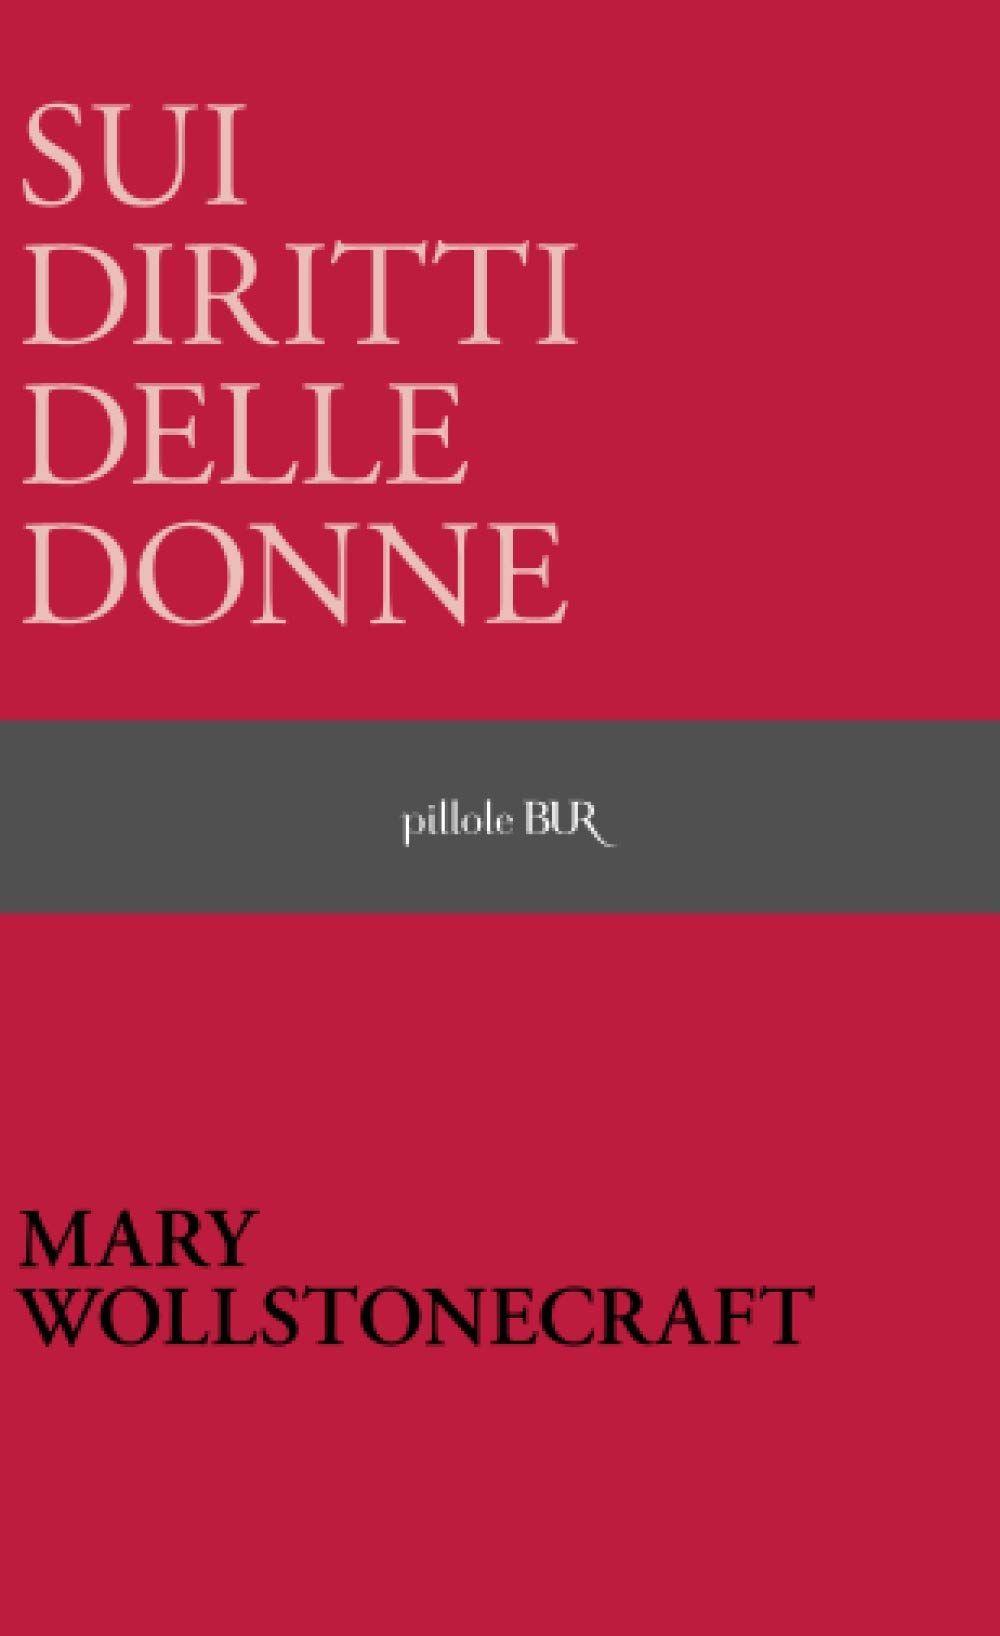 Libro "Sui diritti delle donne" di Mary Wollstonecraft